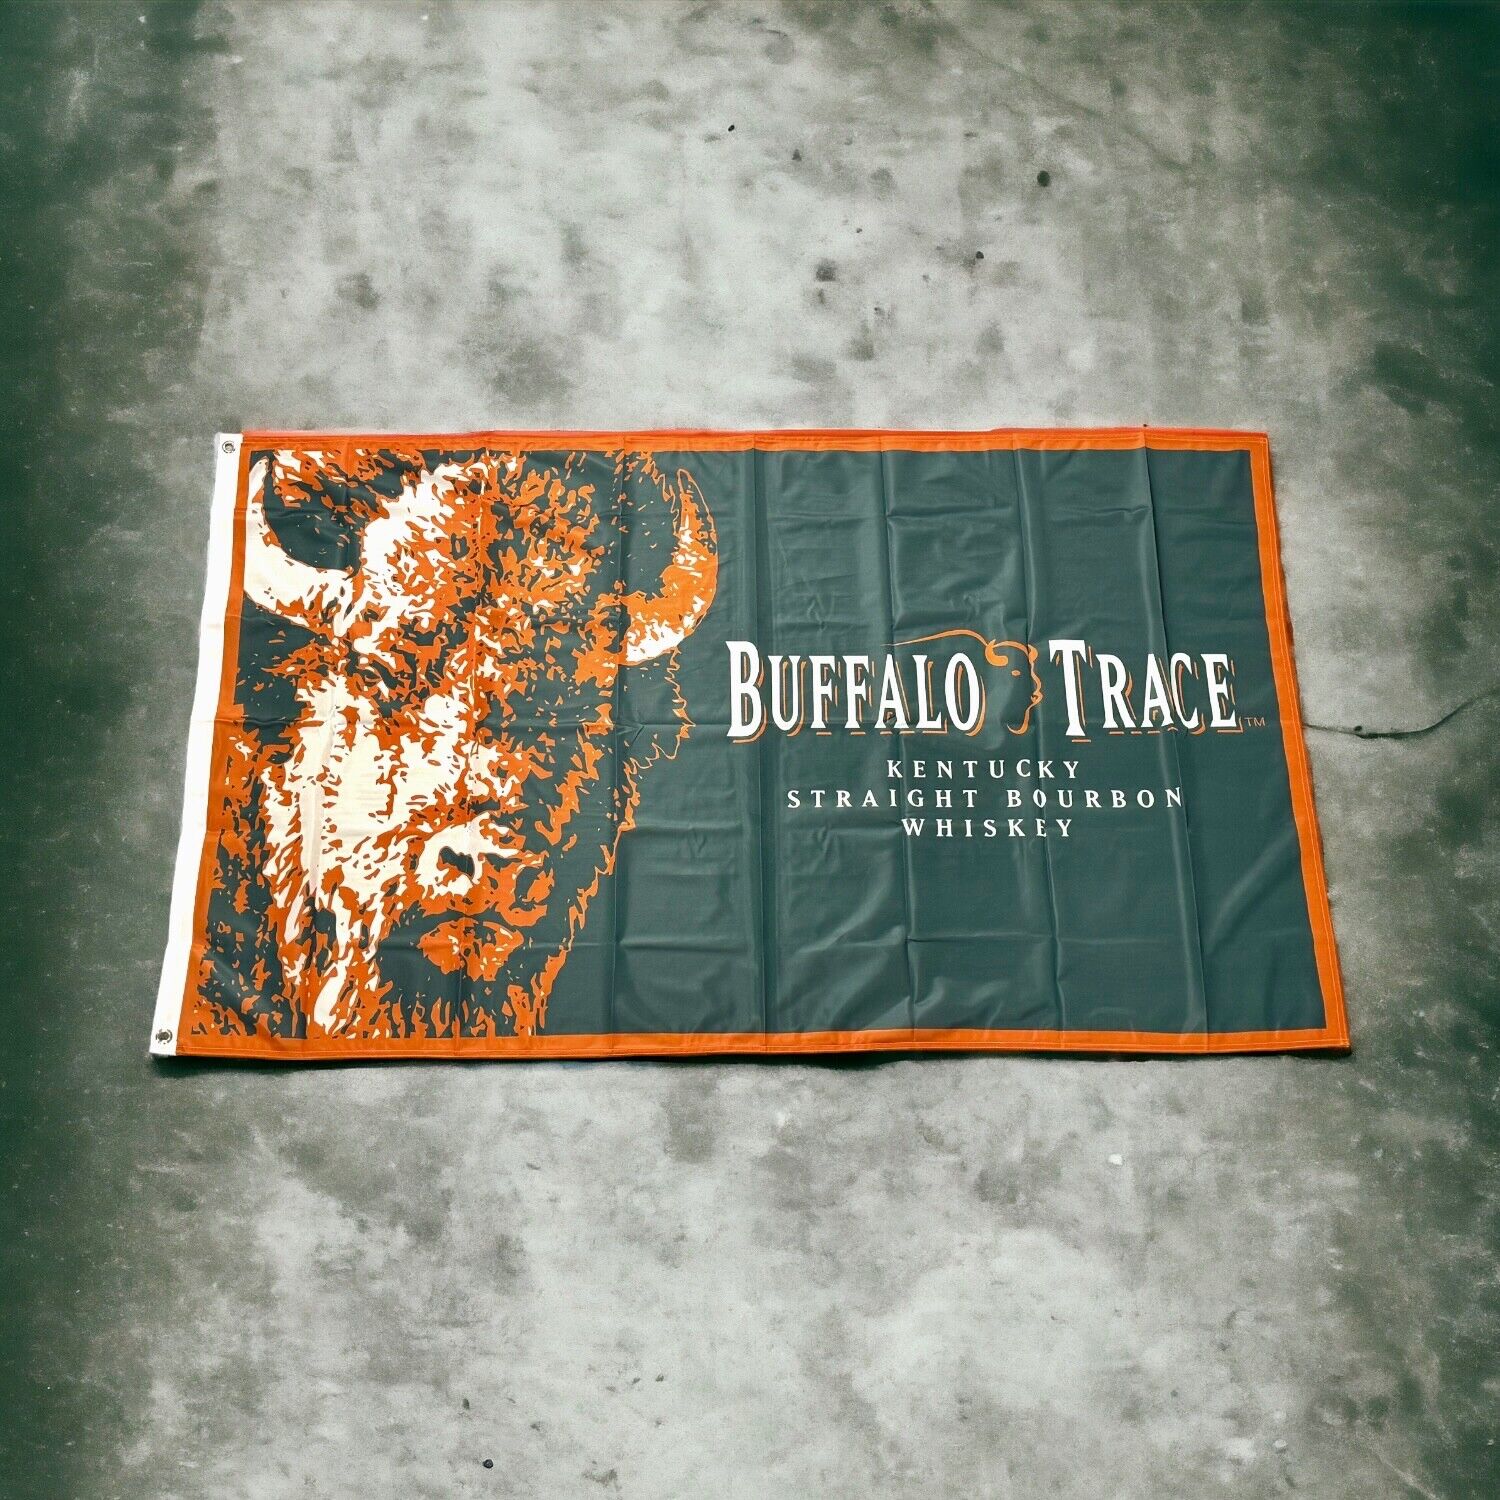 NEW Buffalo Trace Kentucky Straight Bourbon Whiskey Flag 3’ X 5’ RARE